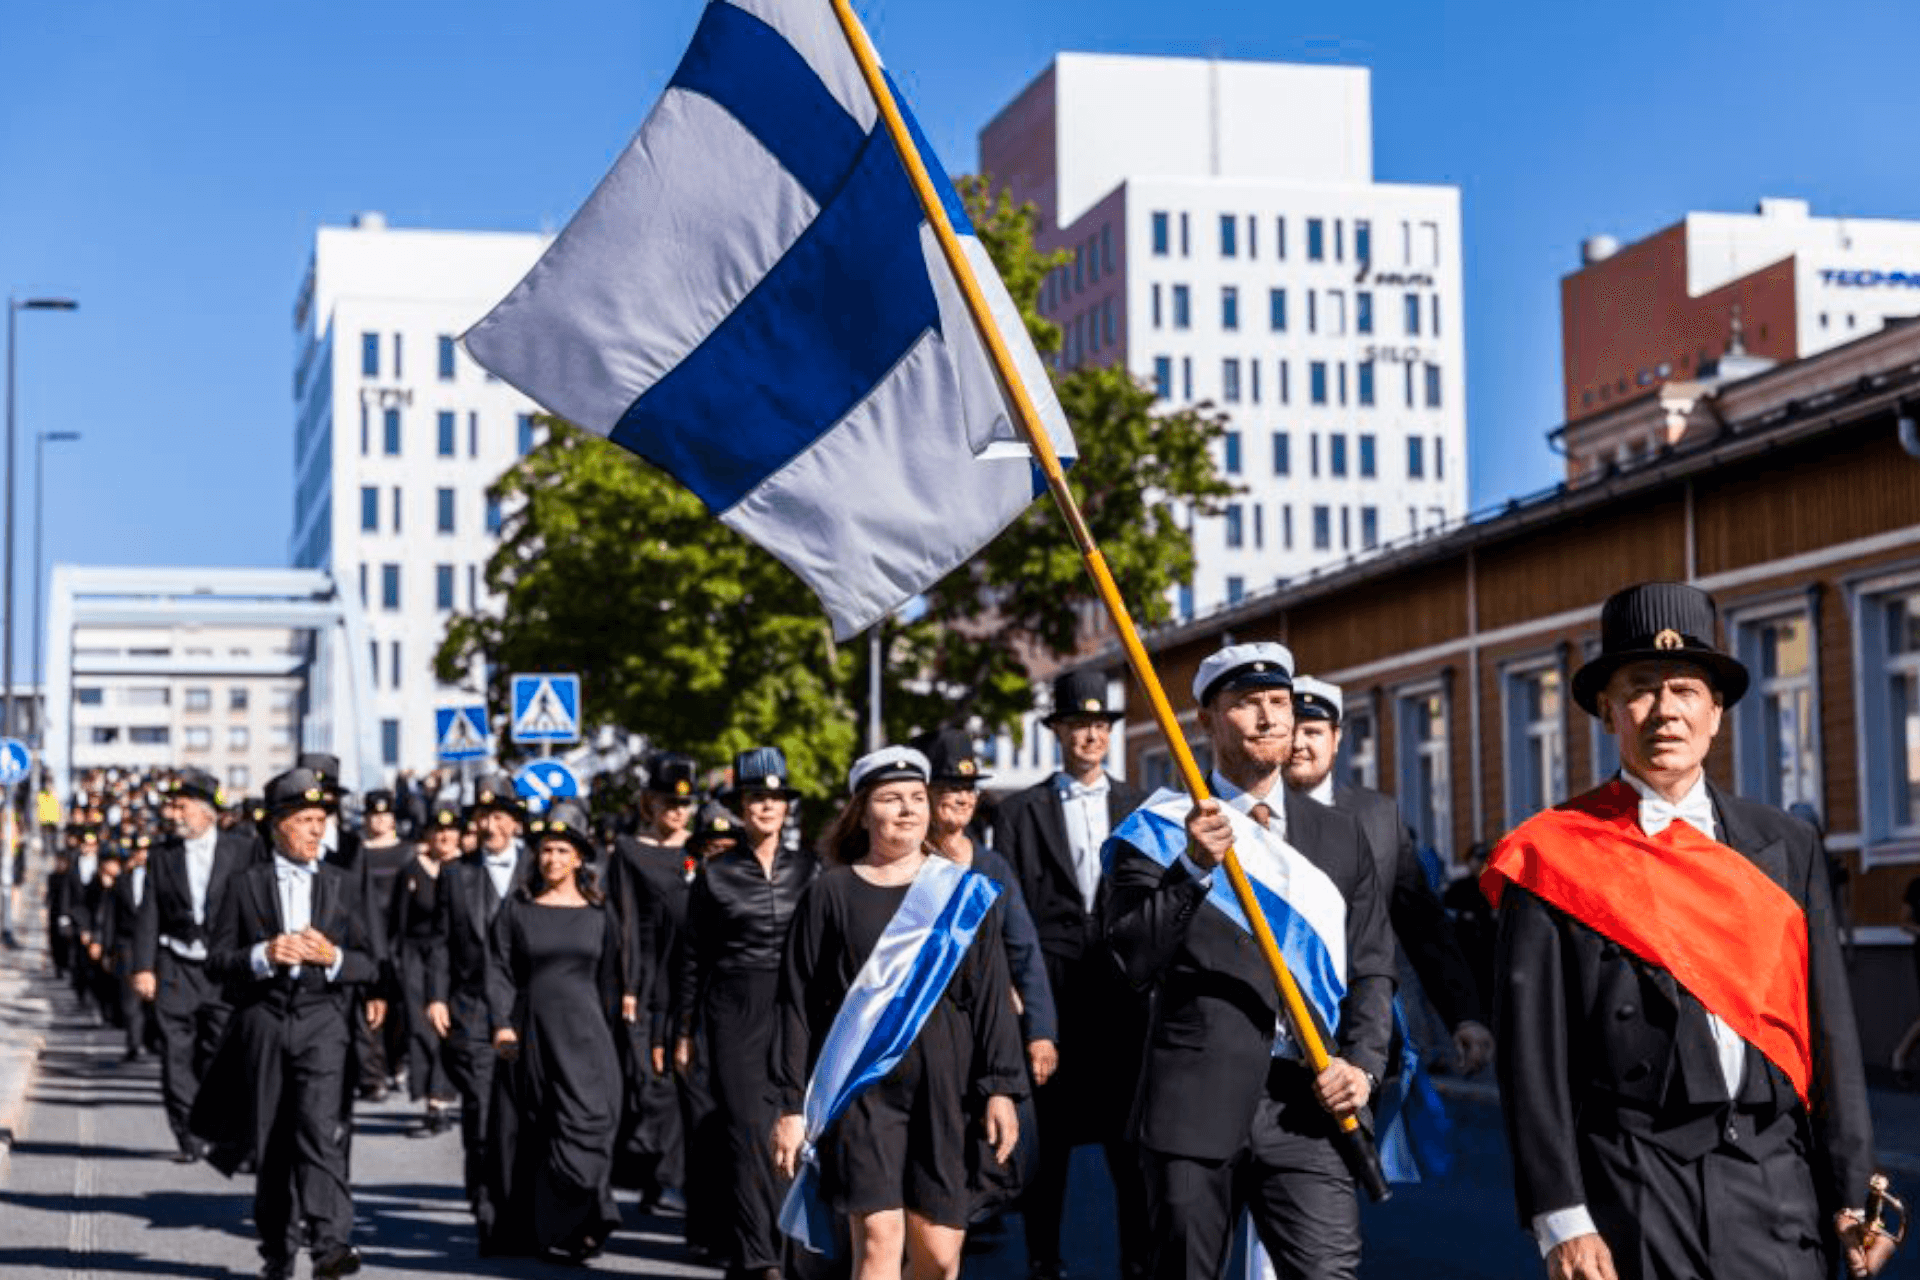 Vuonna 2022 järjestetyn tohtoripromootion kulkue Tampereen kadulla. Kärjessä mies kantaa suomenlippua. Aurinko paistaa.